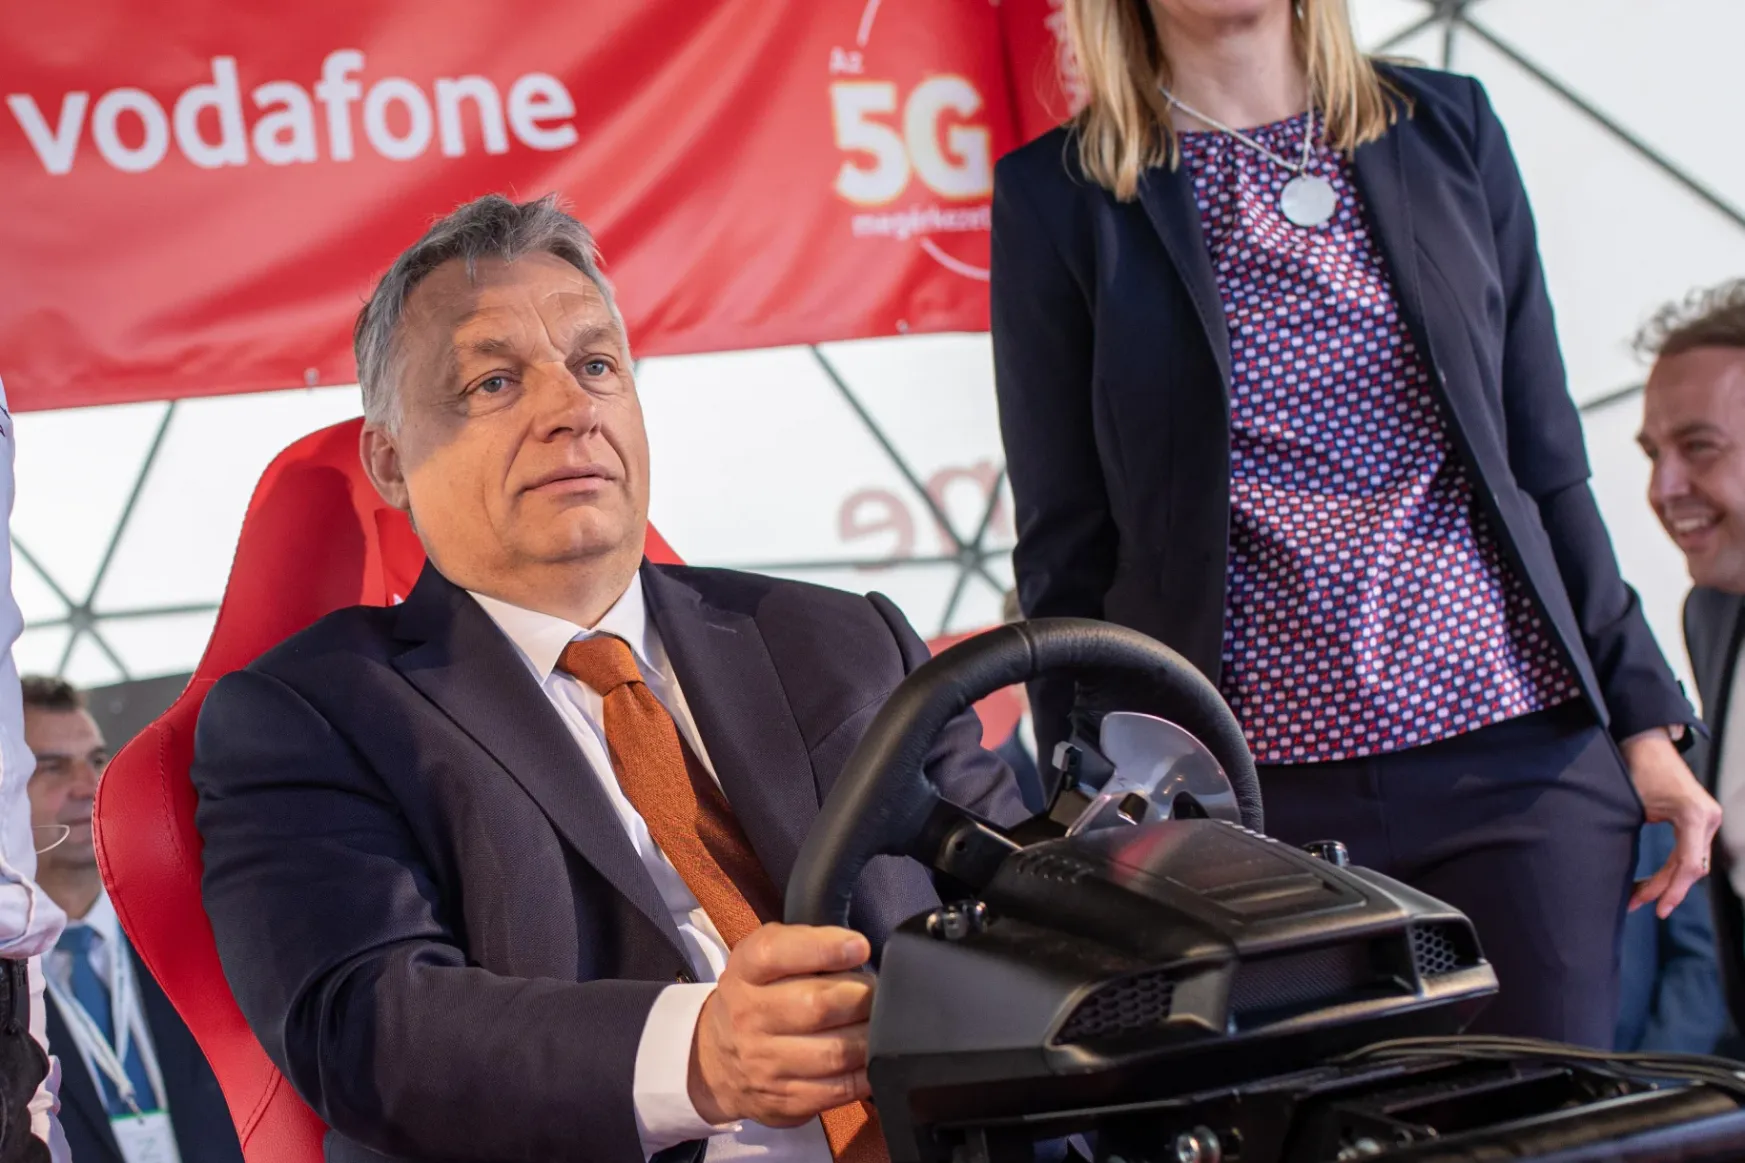 Kínai állami óriásbankok felé adósodott el Magyarország a Vodafone megvétele miatt